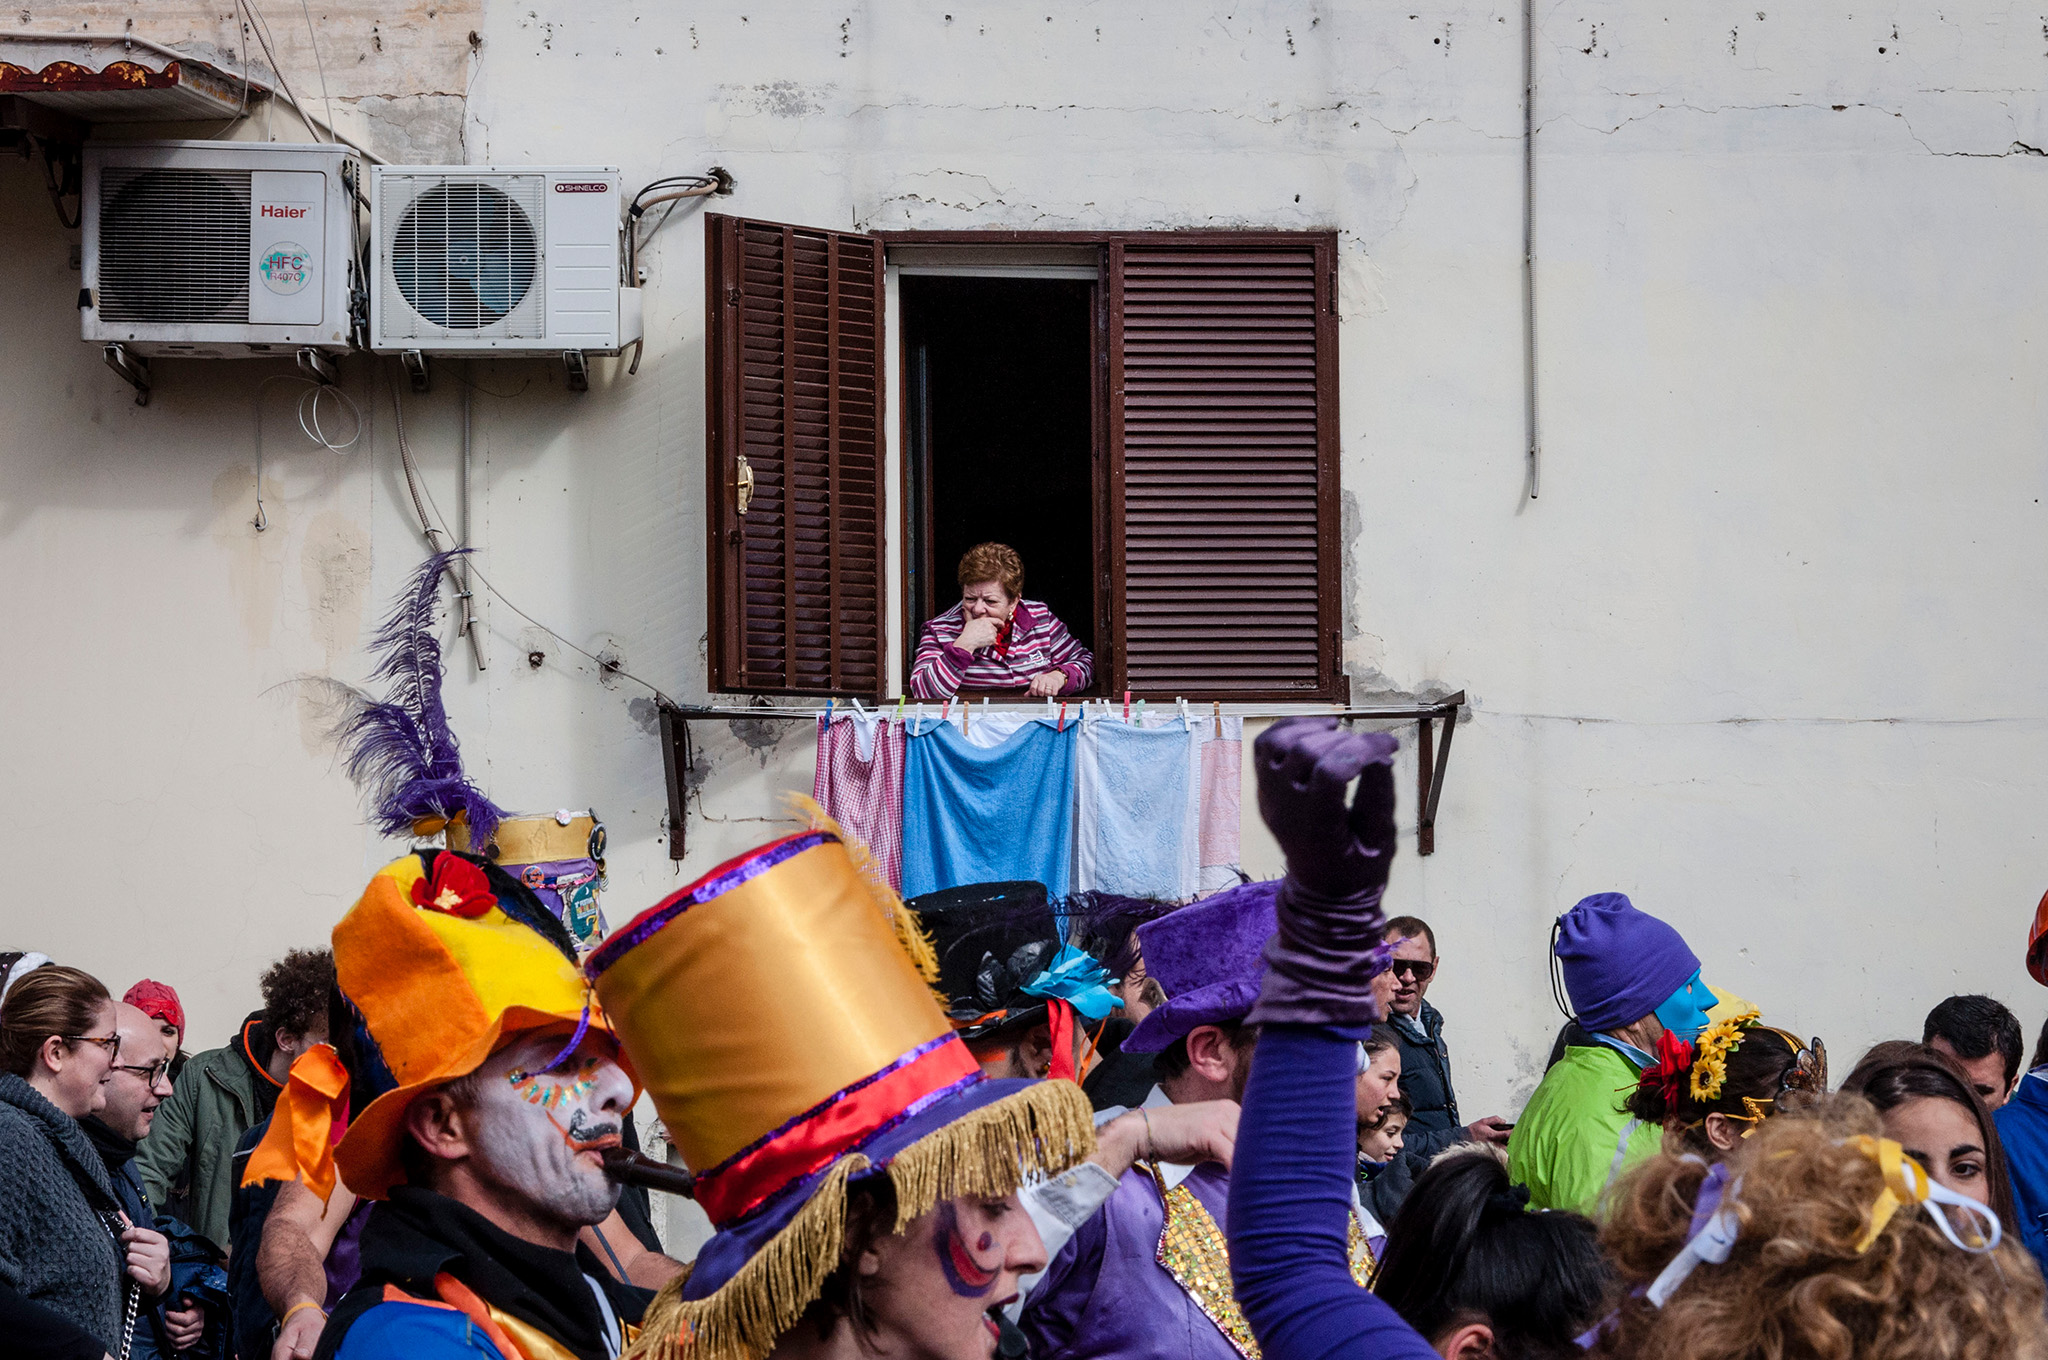 Fotografia di reportage, fotografo Guglielmo Verrienti - Carnevale di Scampia